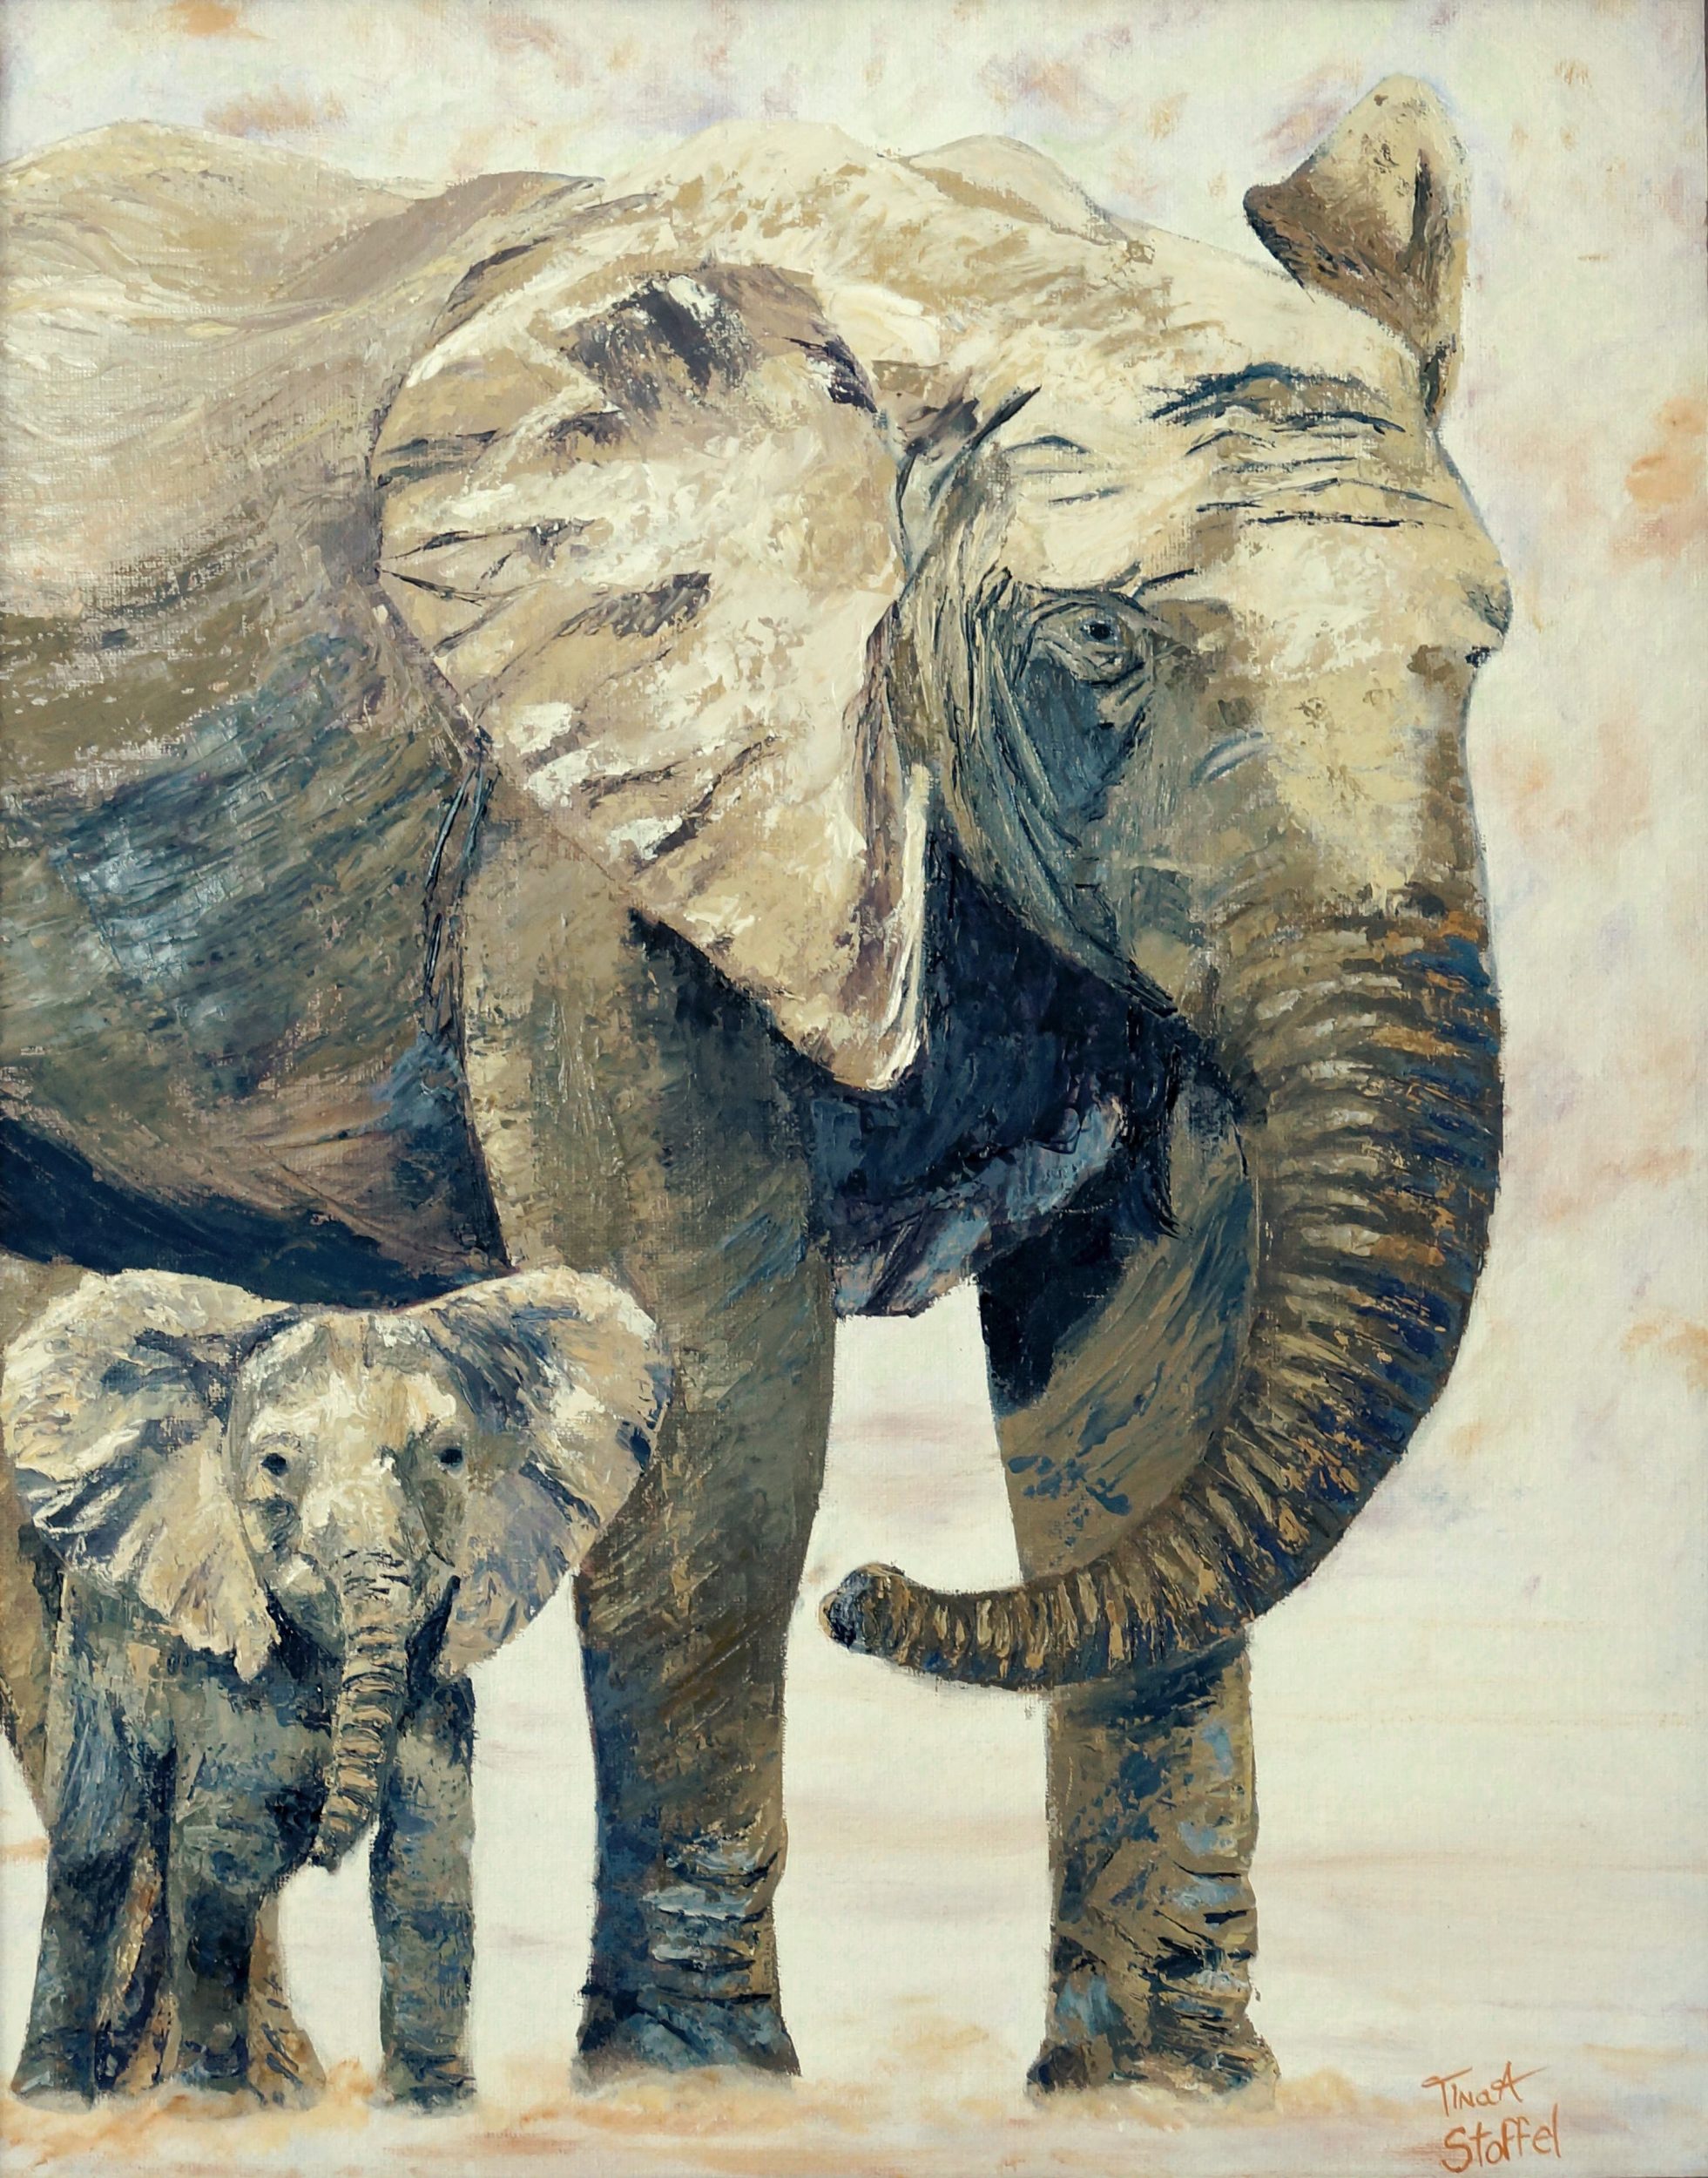 Î‘Ï€Î¿Ï„Î­Î»ÎµÏƒÎ¼Î± ÎµÎ¹ÎºÏŒÎ½Î±Ï‚ Î³Î¹Î± elephant painting